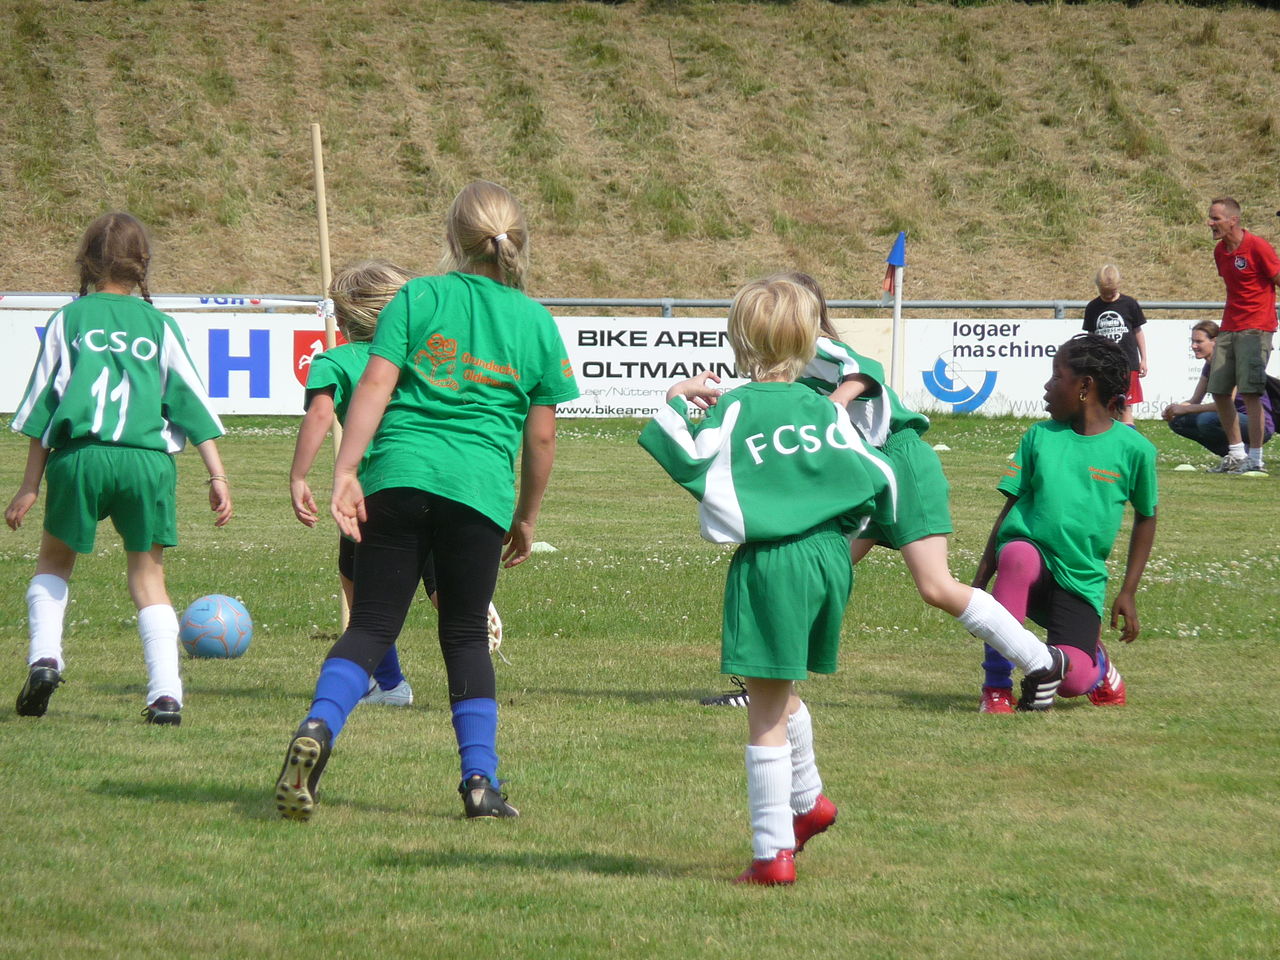 Ungdomar spelar fotboll. Foto: J.Köster